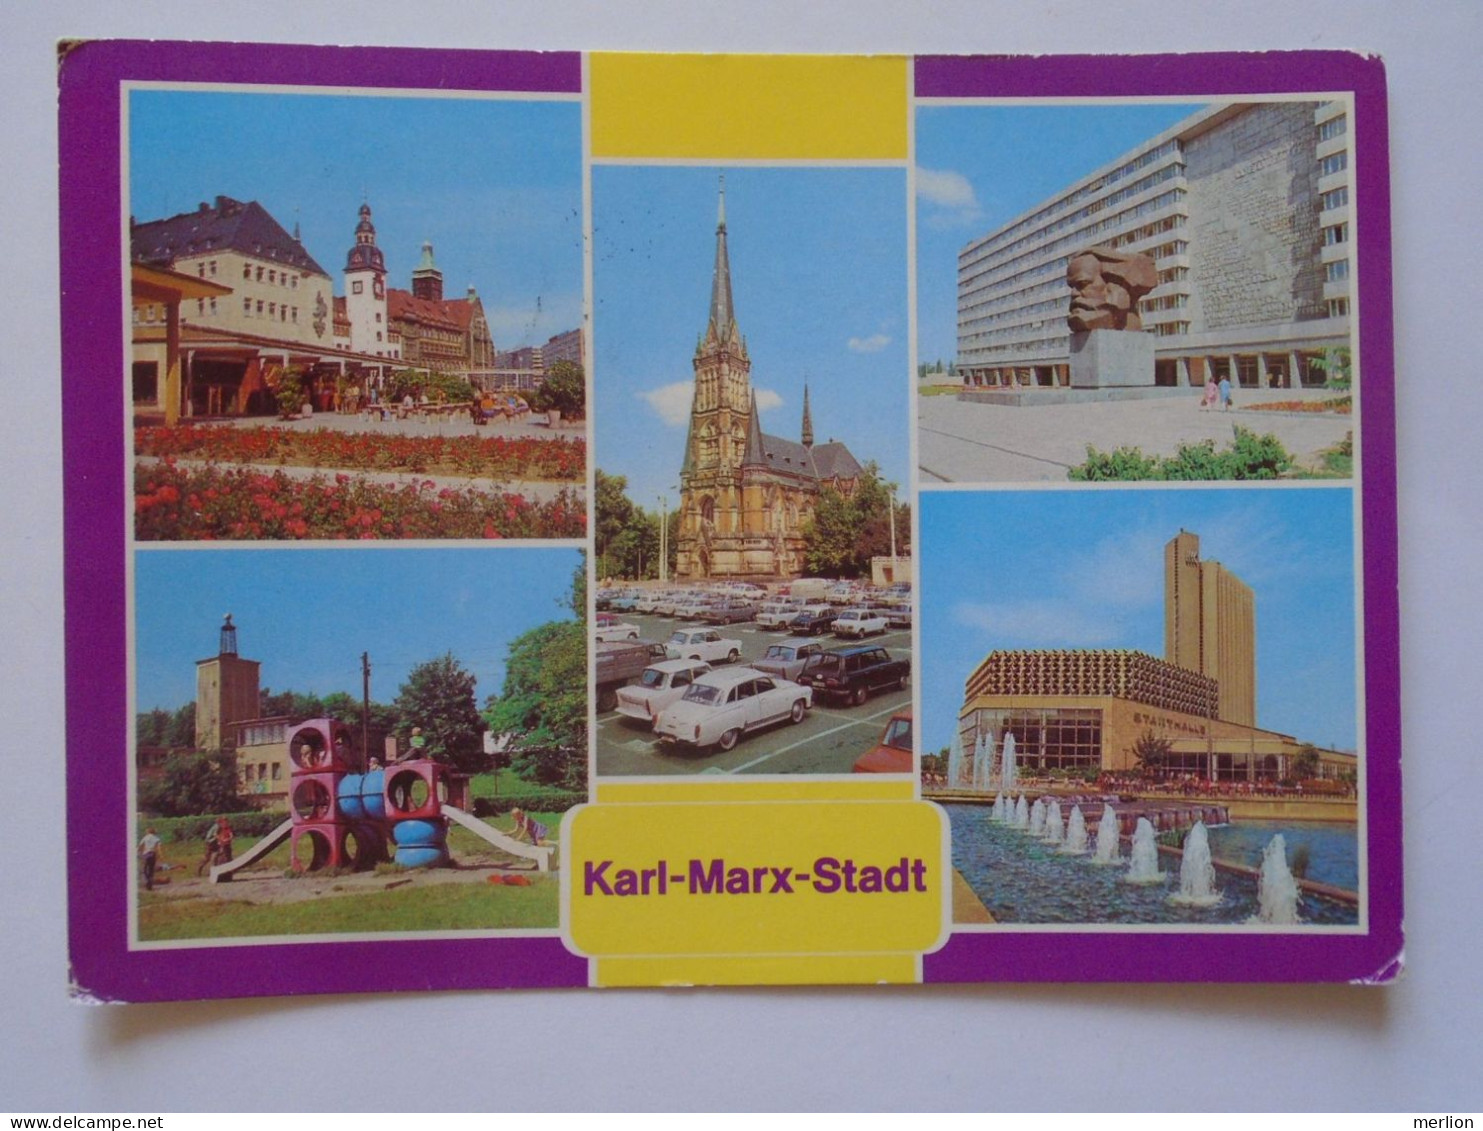 D196812    Germany  DDR Chemnitz  -Karl Marx Stadt   - Ca 1980  Sent To Hungary - Chemnitz (Karl-Marx-Stadt 1953-1990)